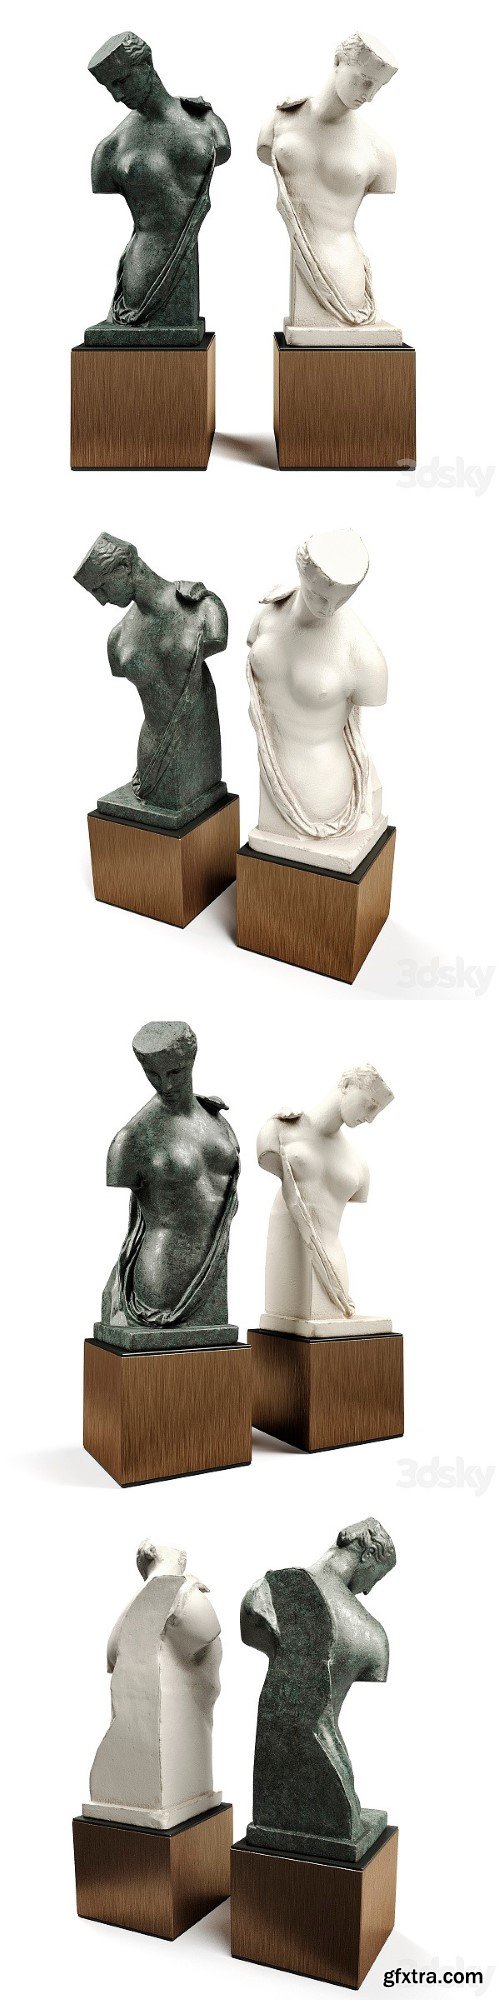 Pro 3DSky - Aphrodite Psyche Sculpture